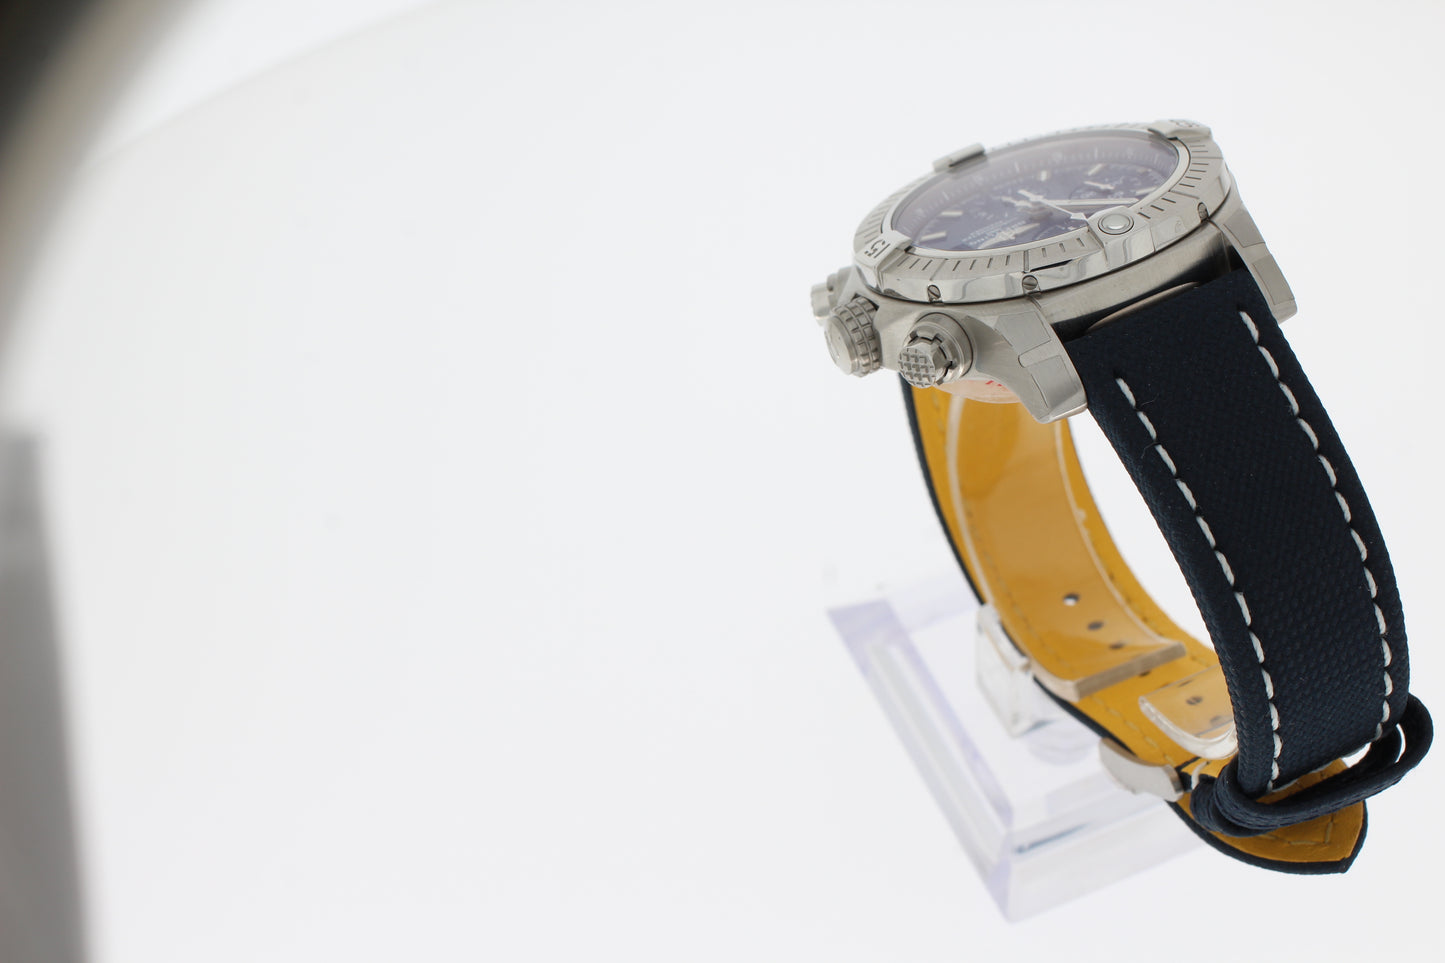 Breitling AVENGER CHRONOGRAPH Herren Uhr 43mm Edelstahl - Blau  A13385101C1X1